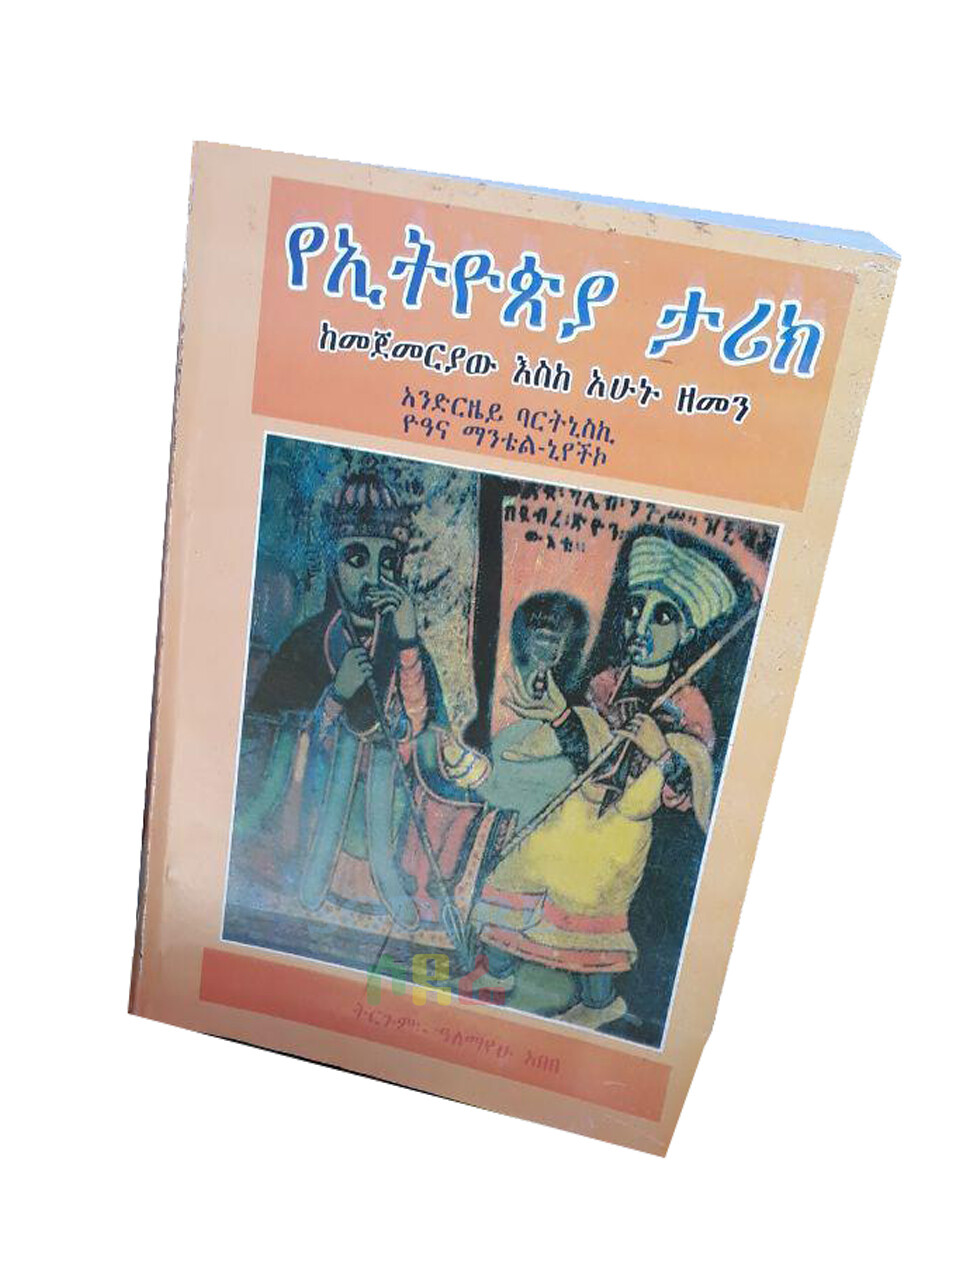 የኢትዮጵያ ታሪክ ከመጀመሪያው እስከ አሁኑ ዘመን The History of Ethiopia From The Beginning to Now / Translated By Alemayehu Abebe